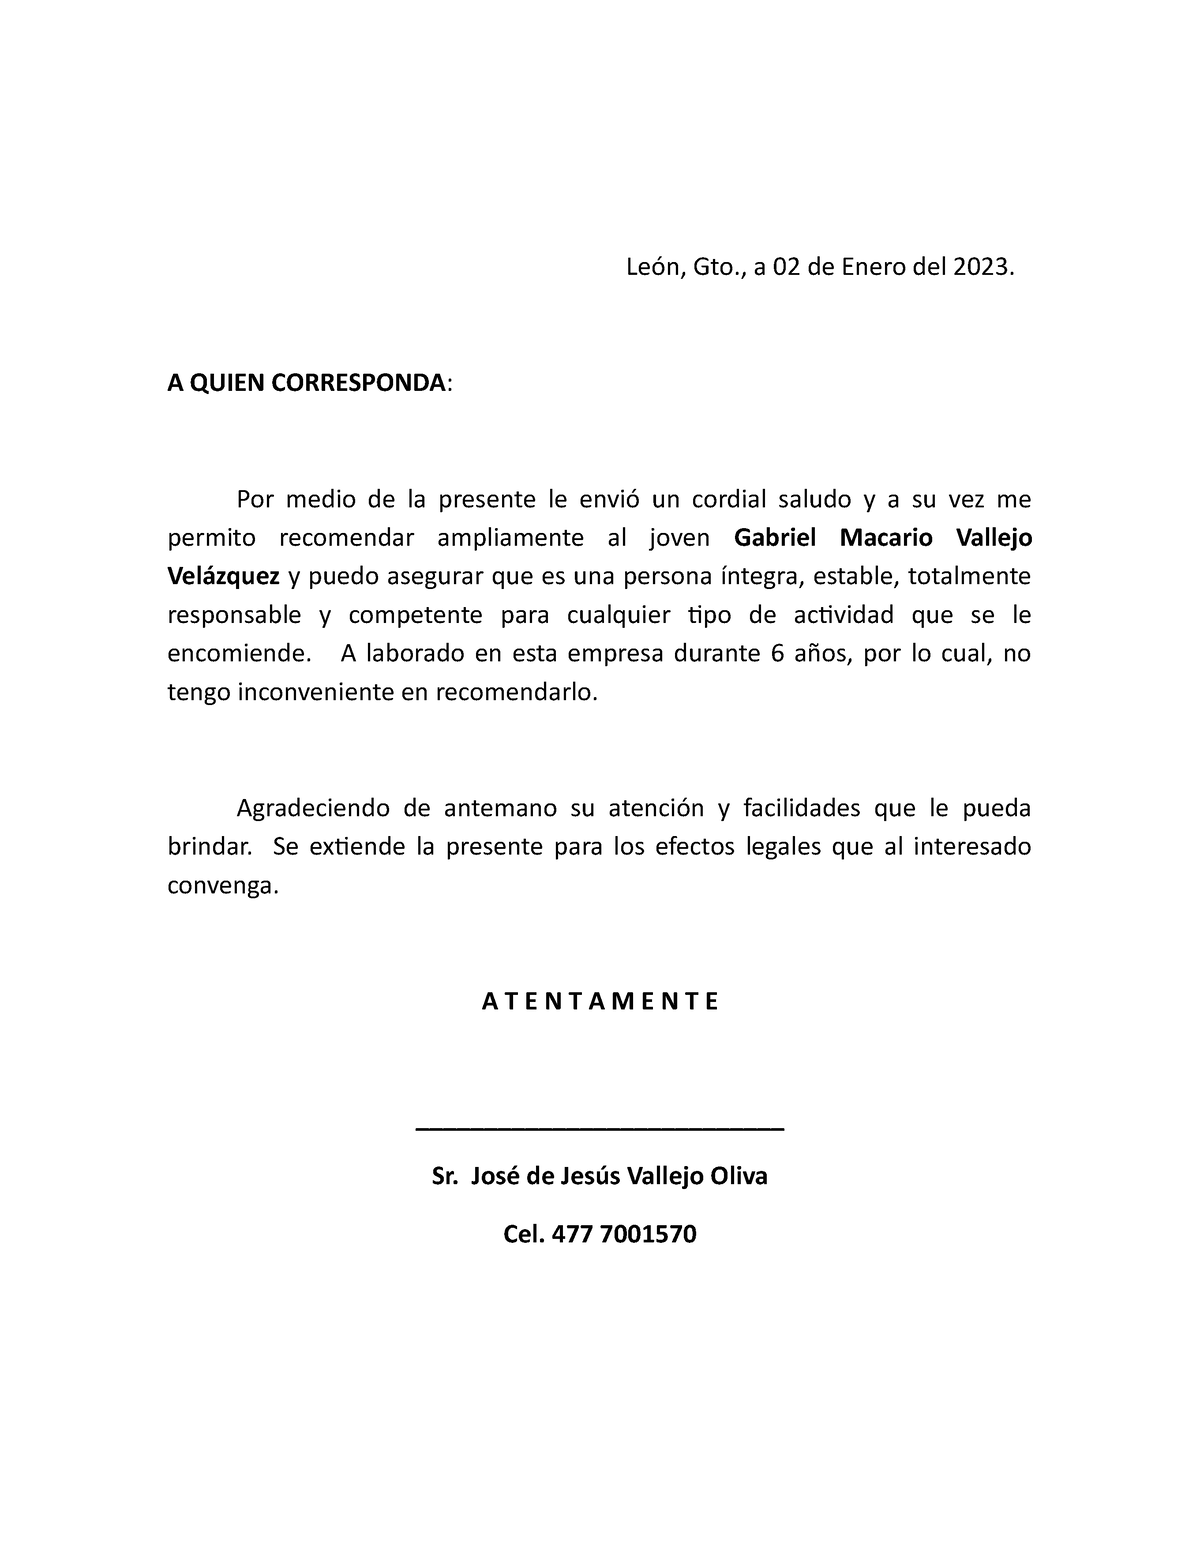 Carta De Recomendacion León Gto A 02 De Enero Del 2023 A Quien Corresponda Por Medio De 4805